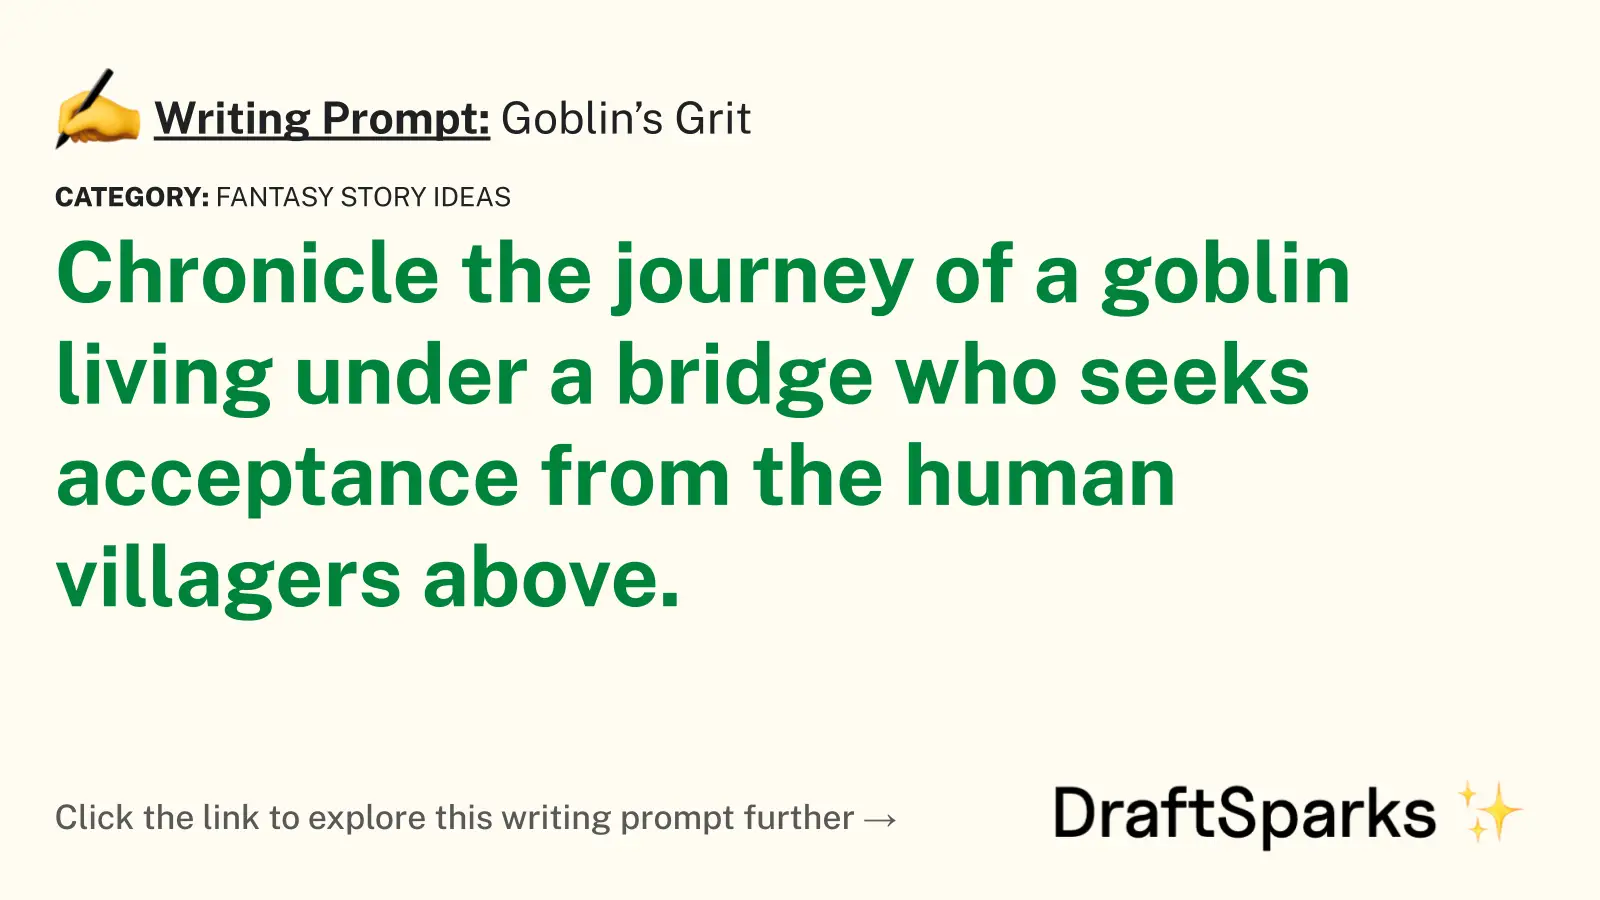 Goblin’s Grit